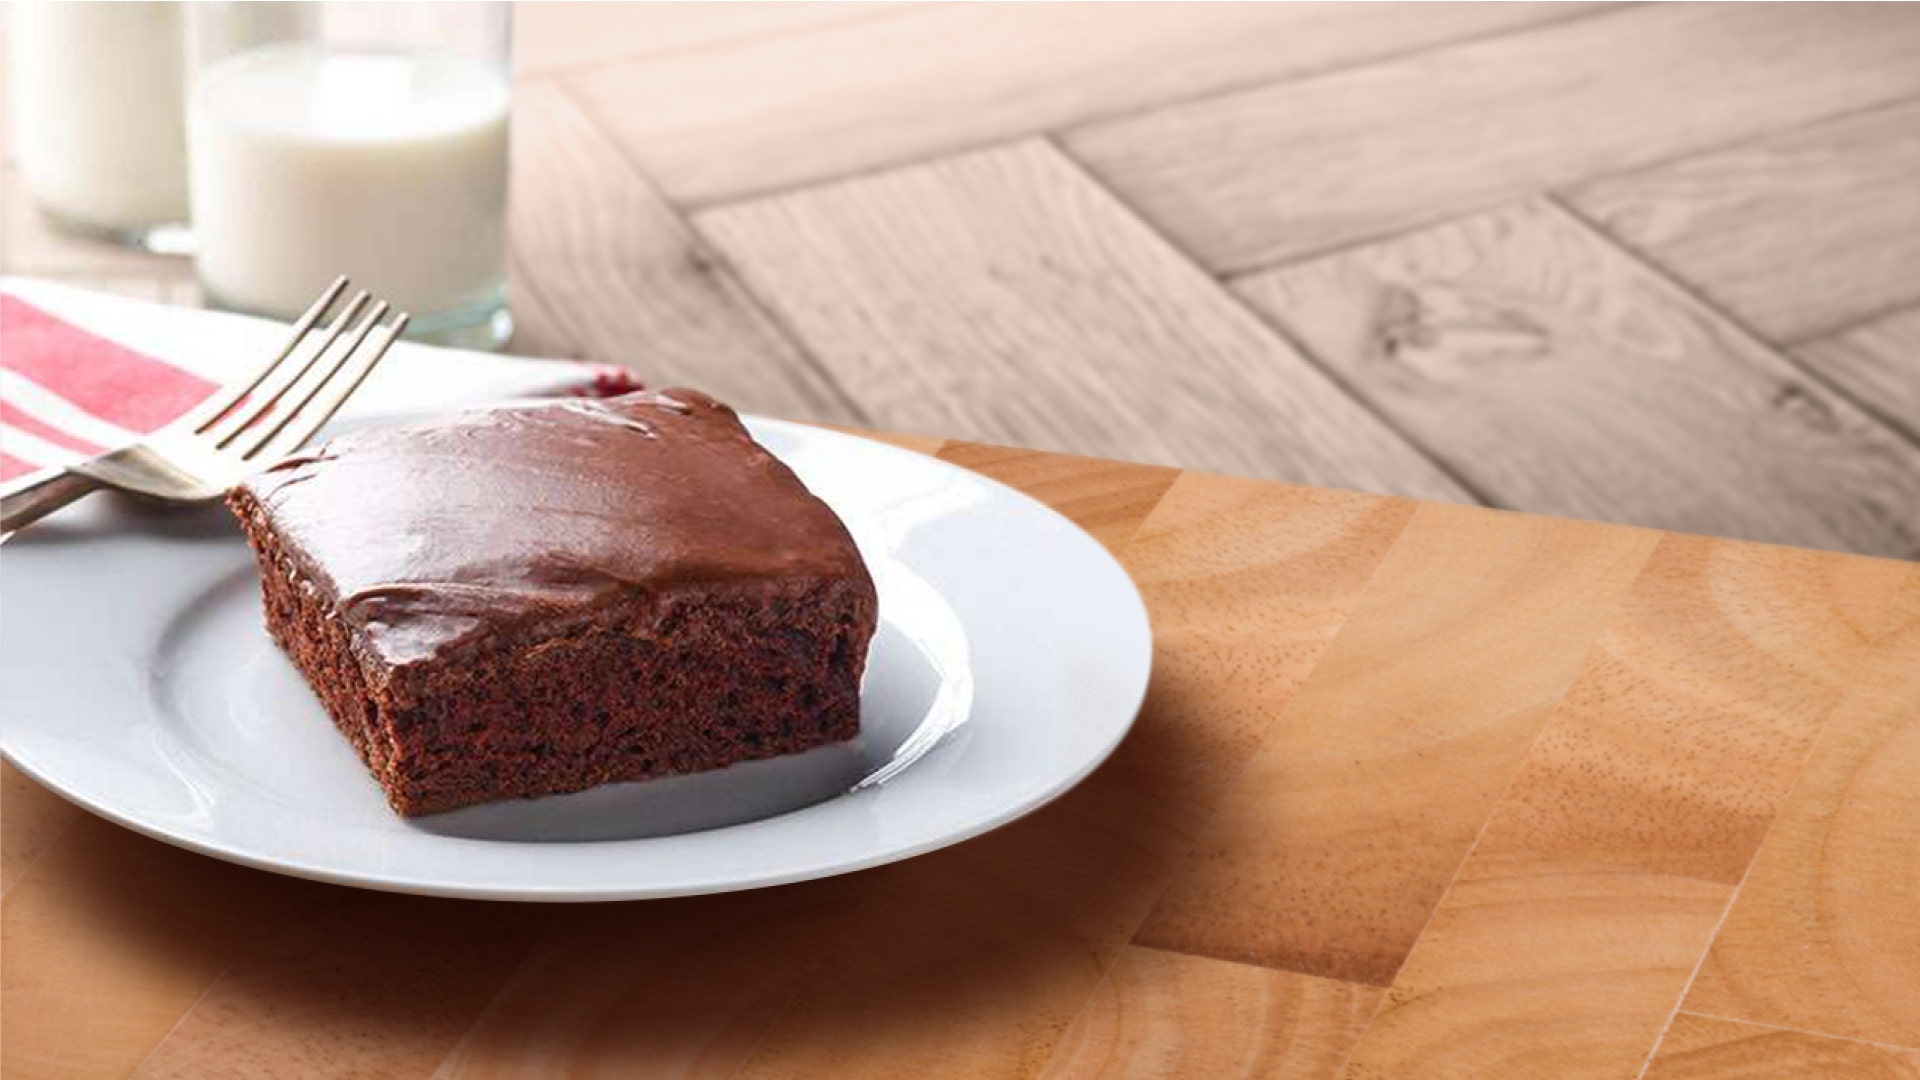 How to make a chocolate cake recipe - Quora